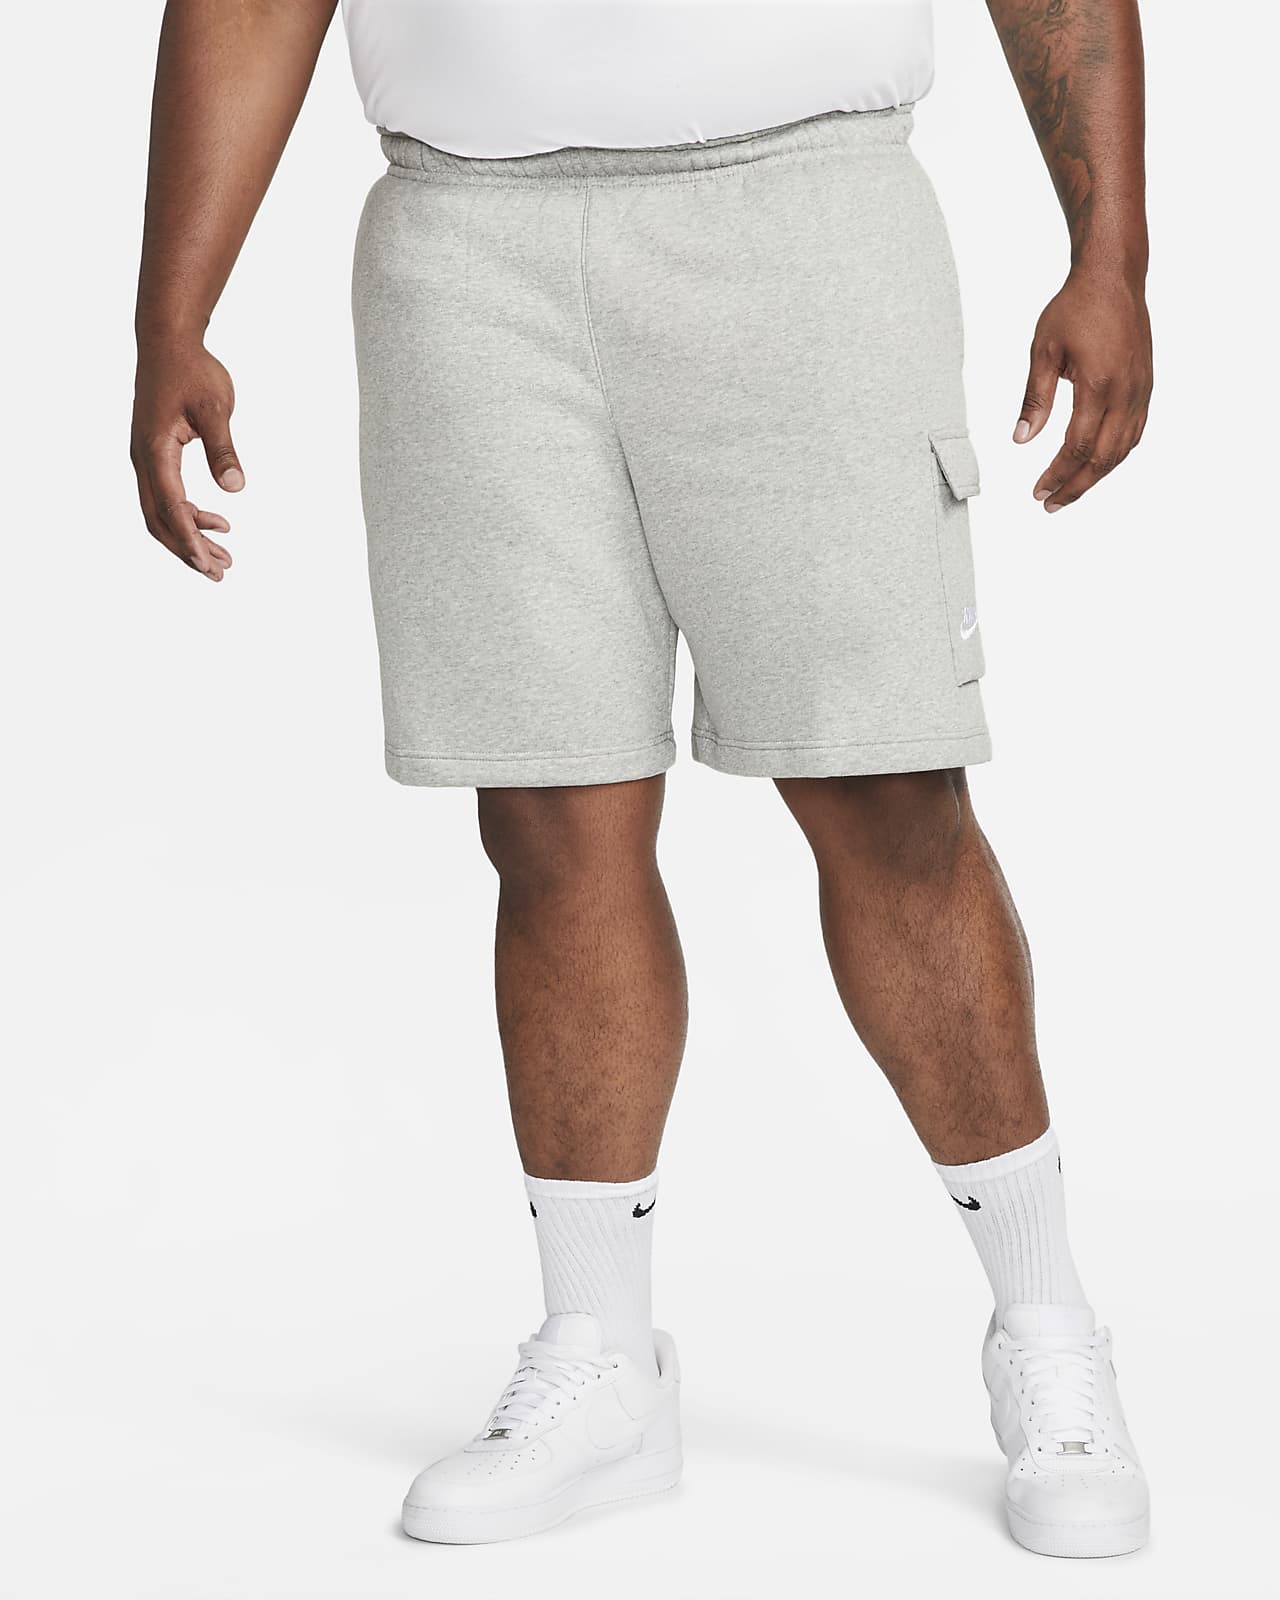 Nike Sportswear Men's Cargo Shorts.